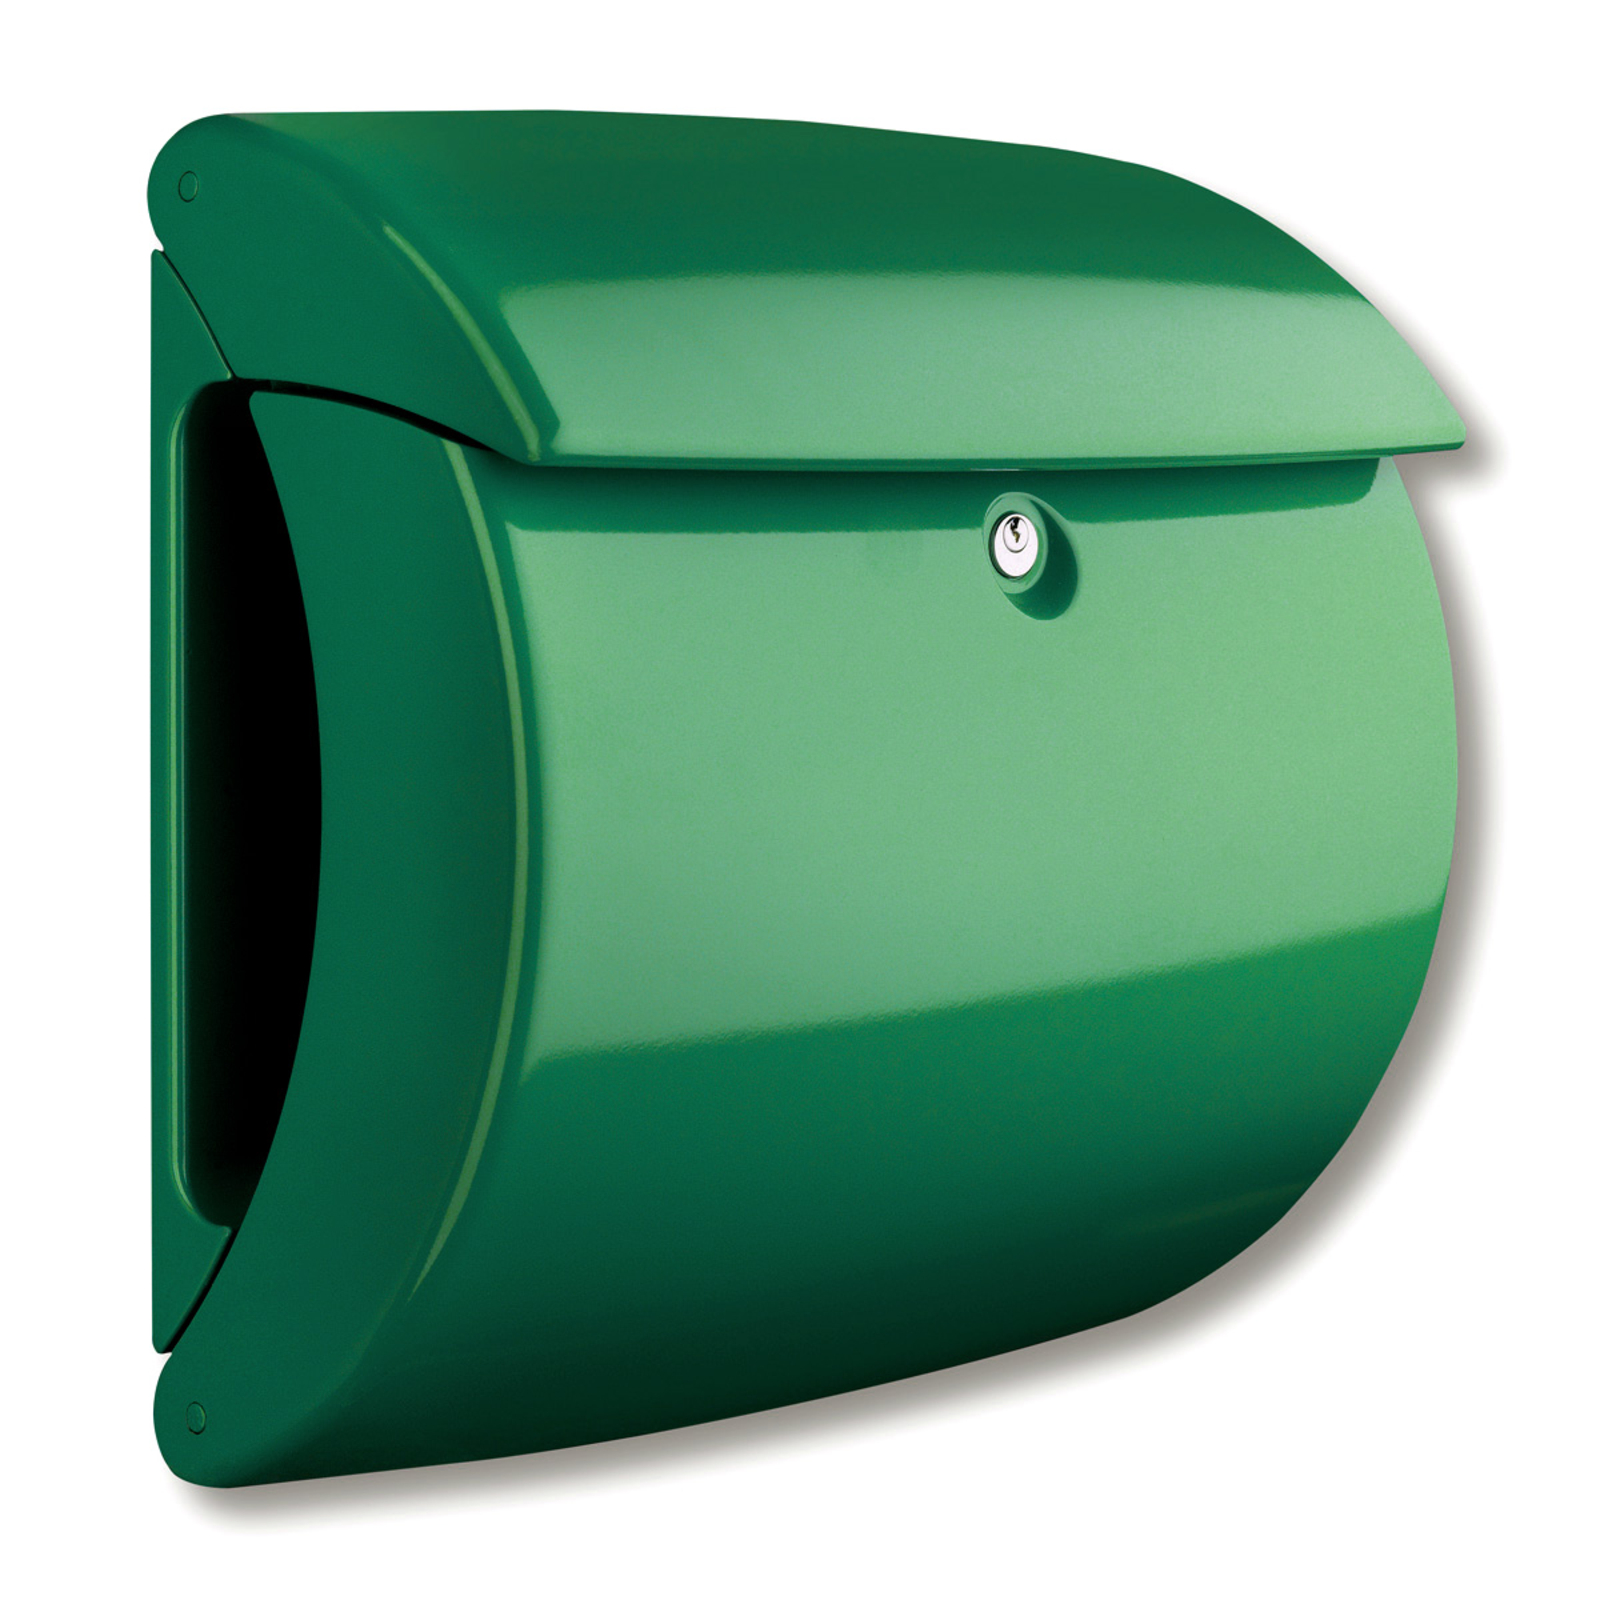 Chic letter box Kiel, green